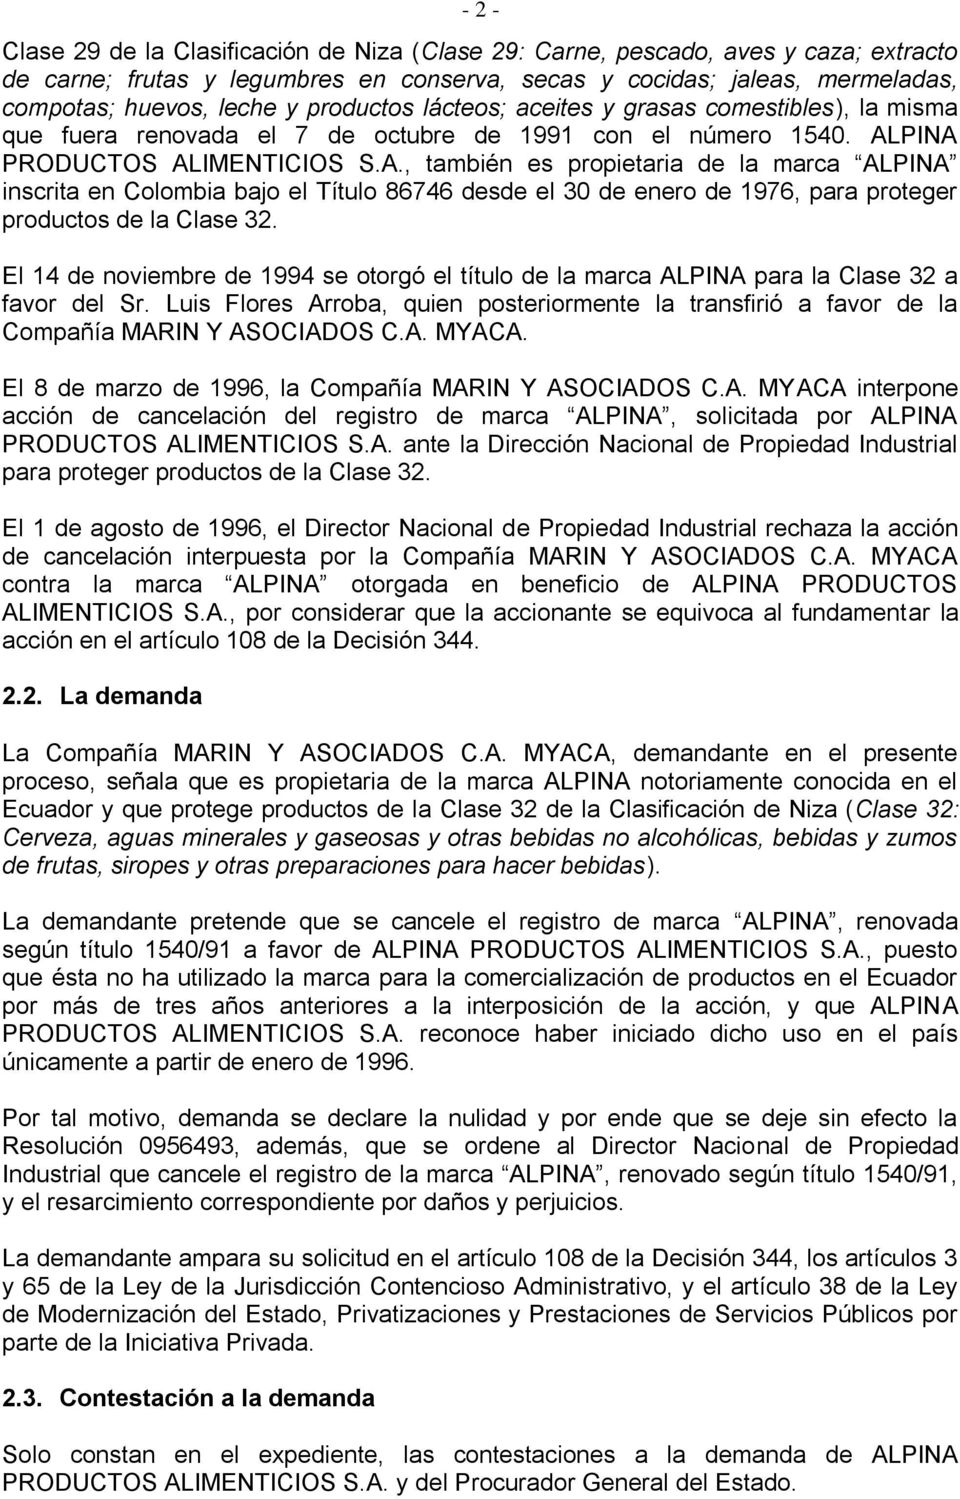 PINA PRODUCTOS ALIMENTICIOS S.A., también es propietaria de la marca ALPINA inscrita en Colombia bajo el Título 86746 desde el 30 de enero de 1976, para proteger productos de la Clase 32.